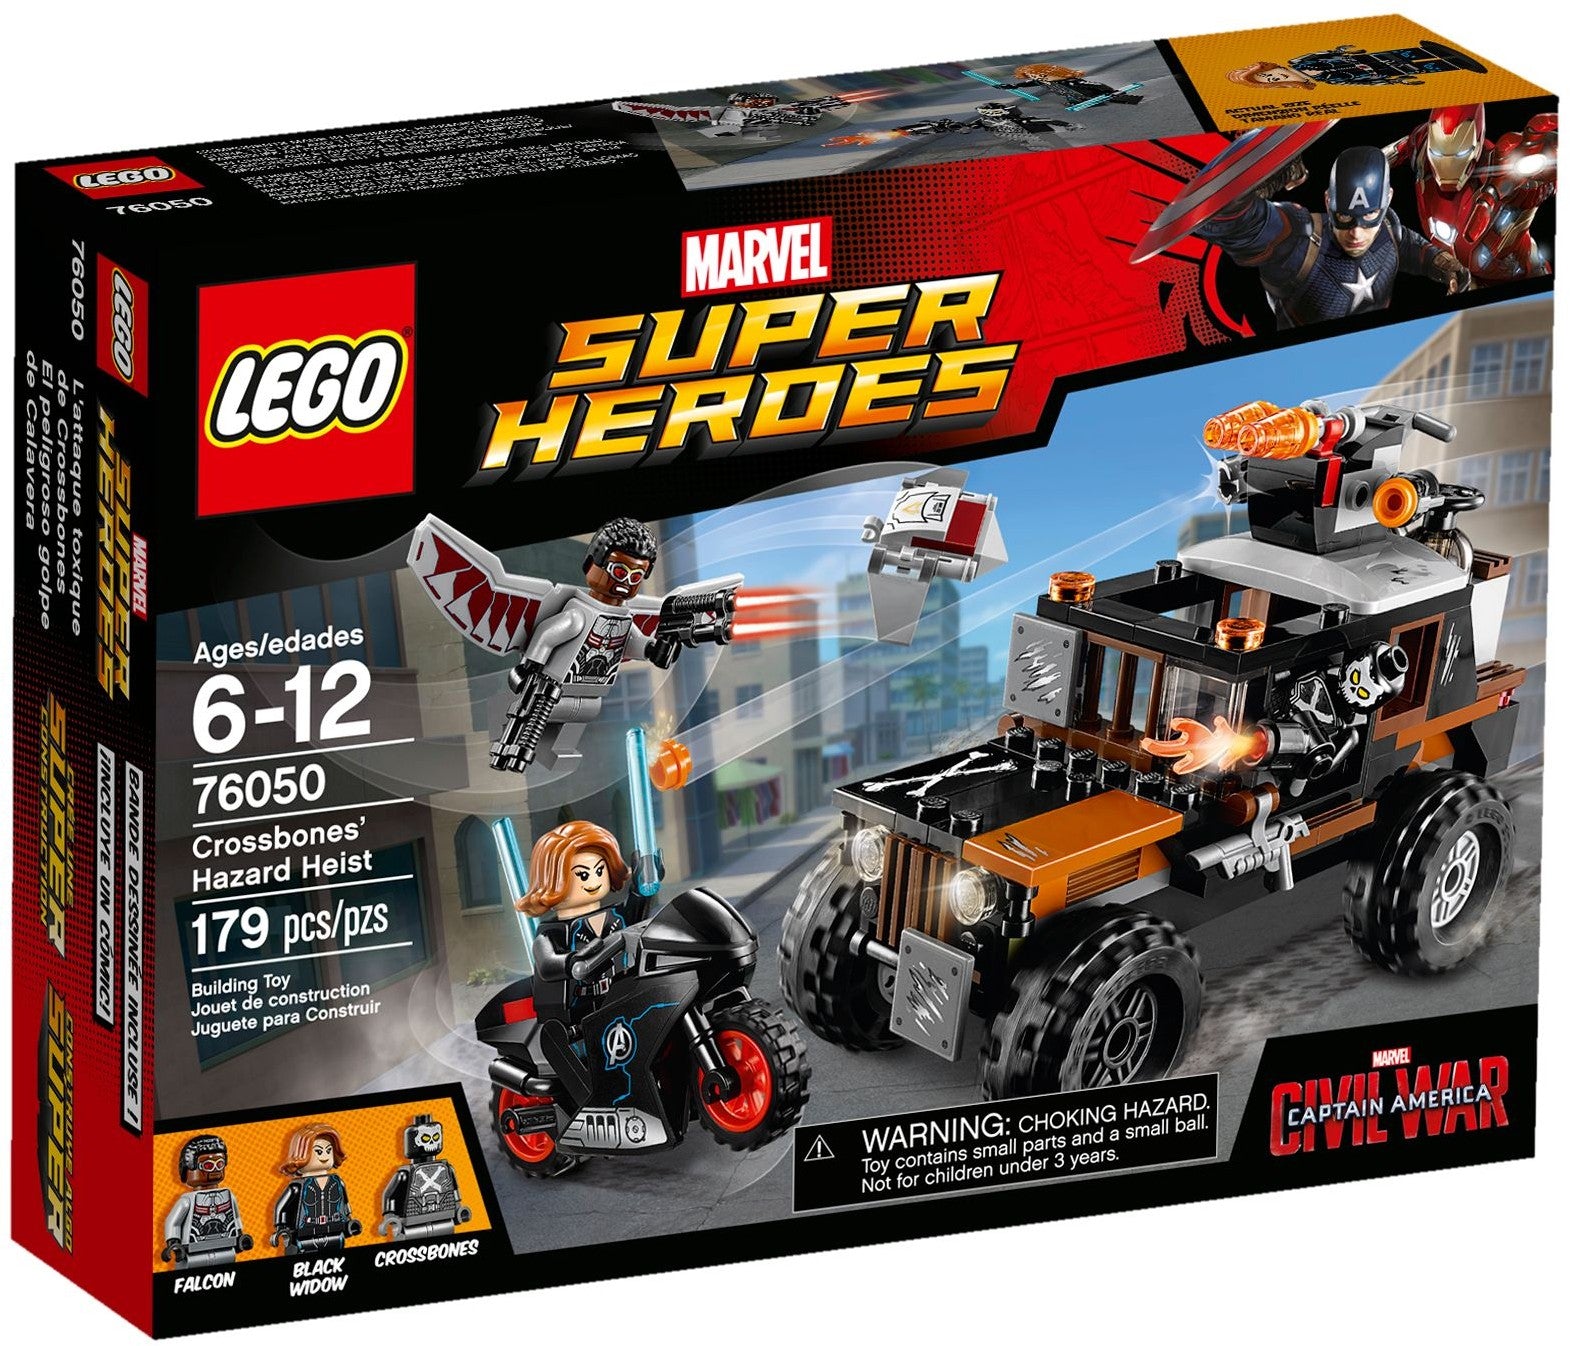 Lego Super Heroes 76050 - Crossbones' Hazard Heist